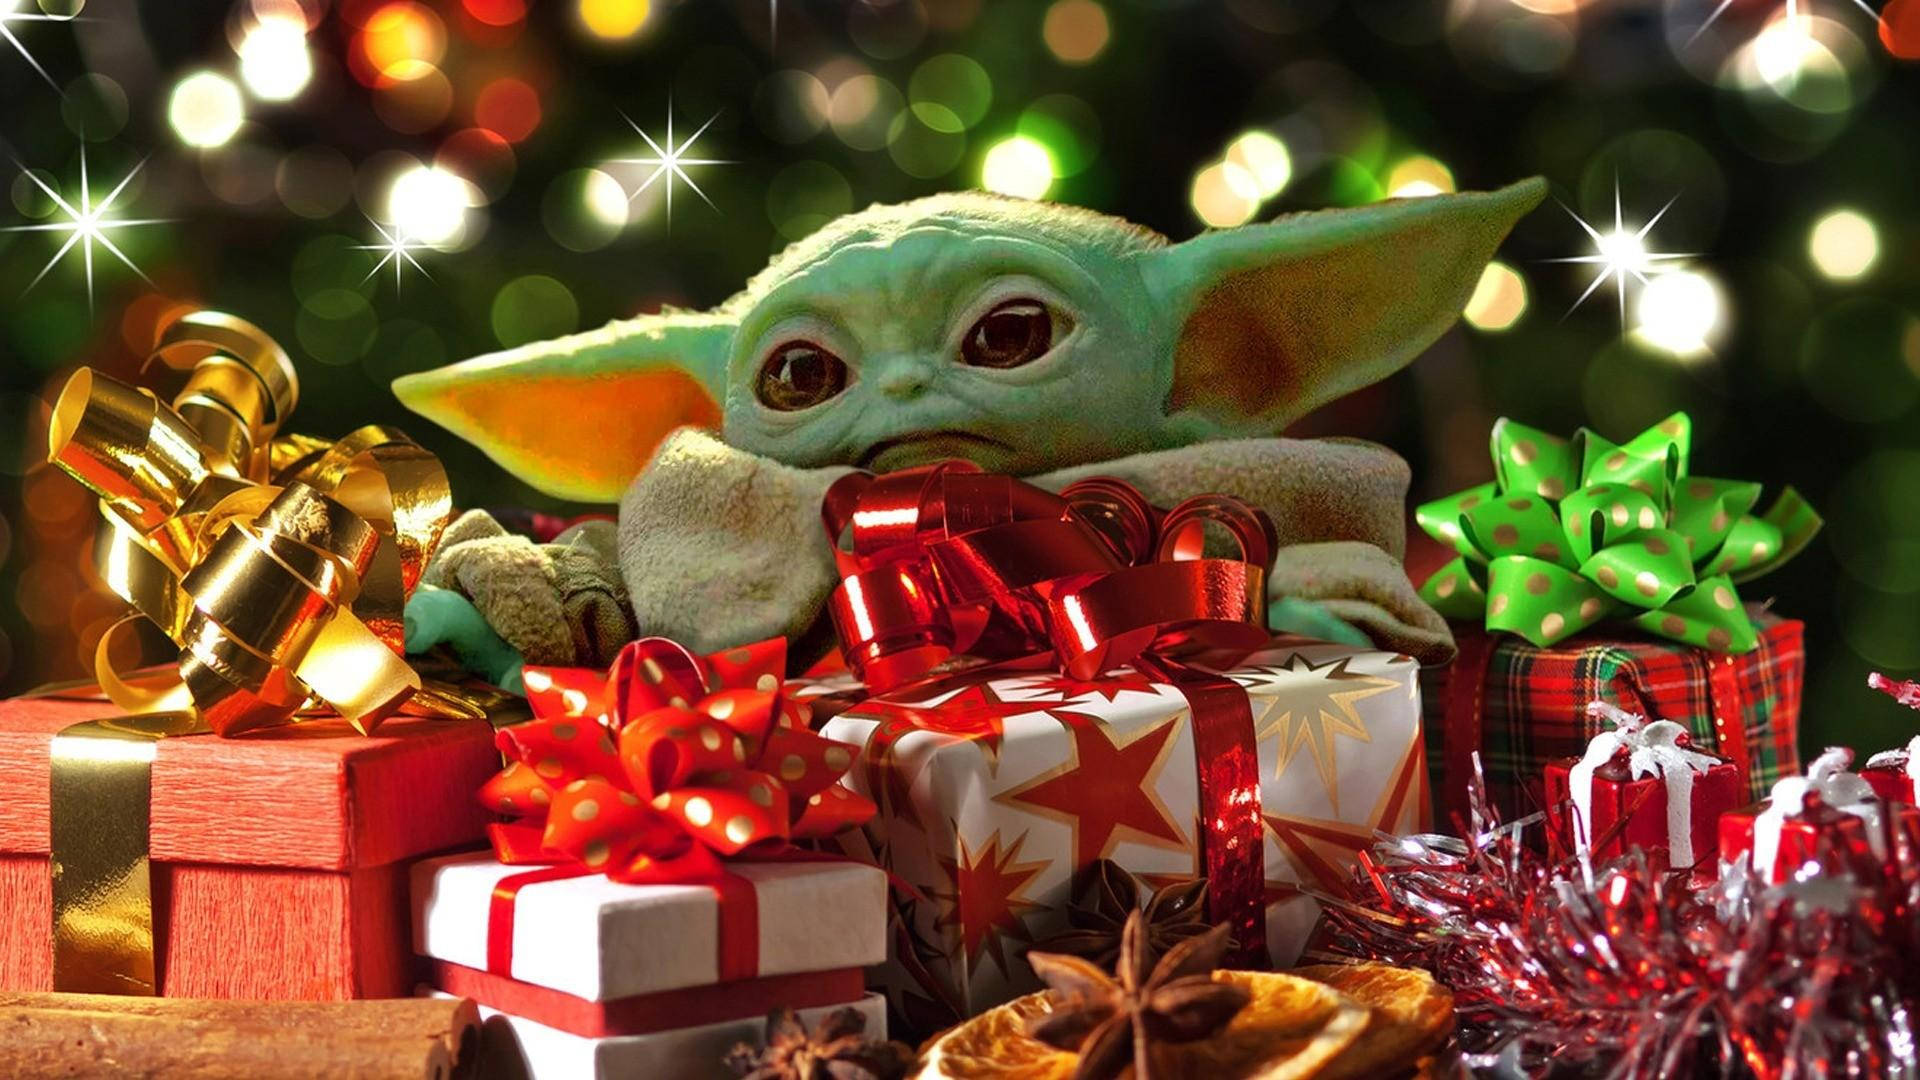 Dành cho các Fan của Star Wars, hình nền Giáng Sinh với các nhân vật được thiết kế phối hợp với các chủ đề lễ hội sẽ khiến bạn có một mùa Giáng Sinh tuyệt vời hơn. Những hình nền Giáng sinh Star Wars ấn tượng này sẽ khiến bạn cảm thấy thế giới rộng lớn và vô tận.